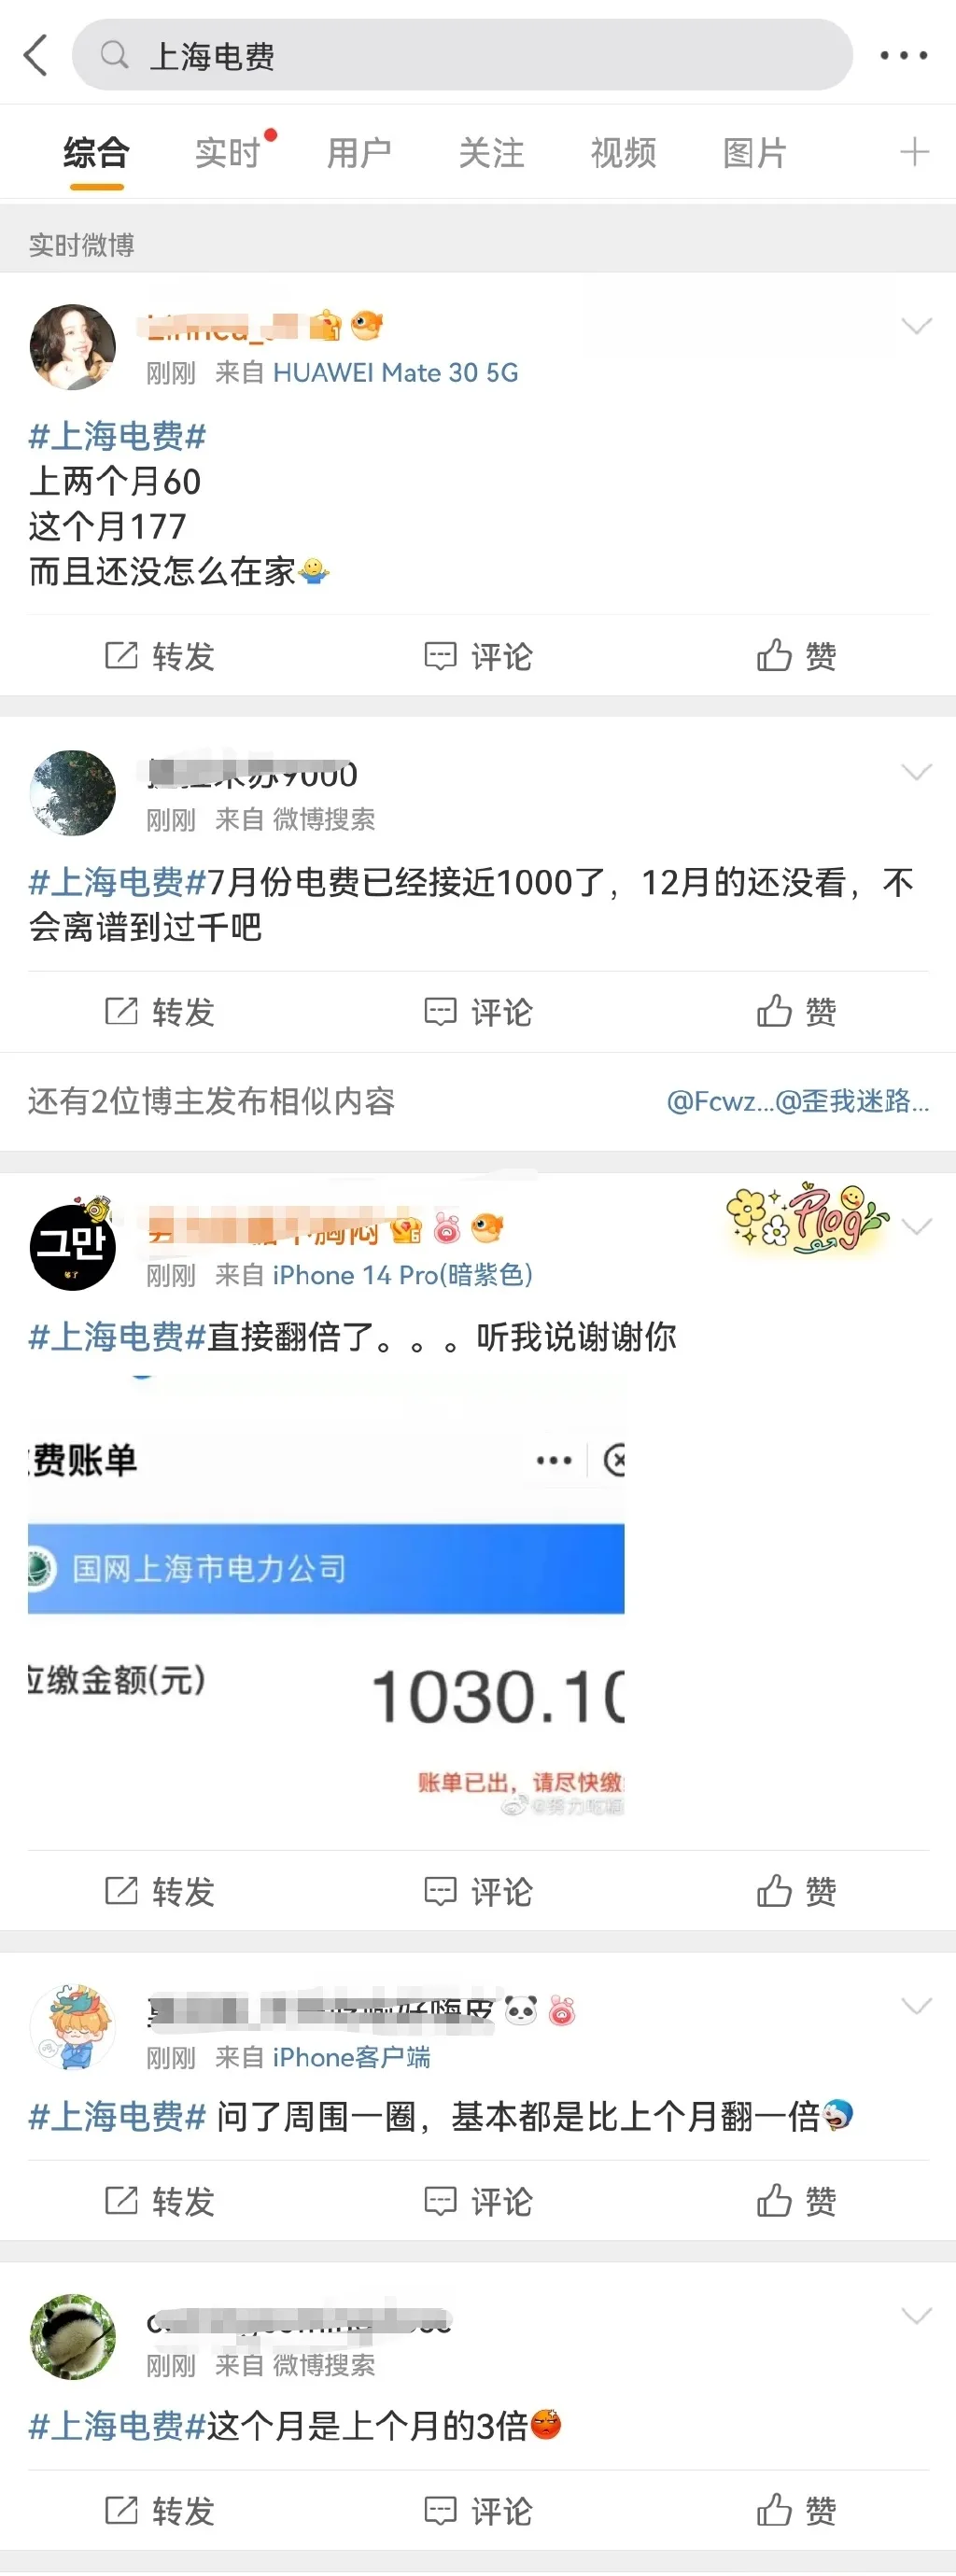 上海电费分时段收费标准最新 上海电费晚上几点到早上几点便宜 上海电费调价表: 早8点至12点1.08元